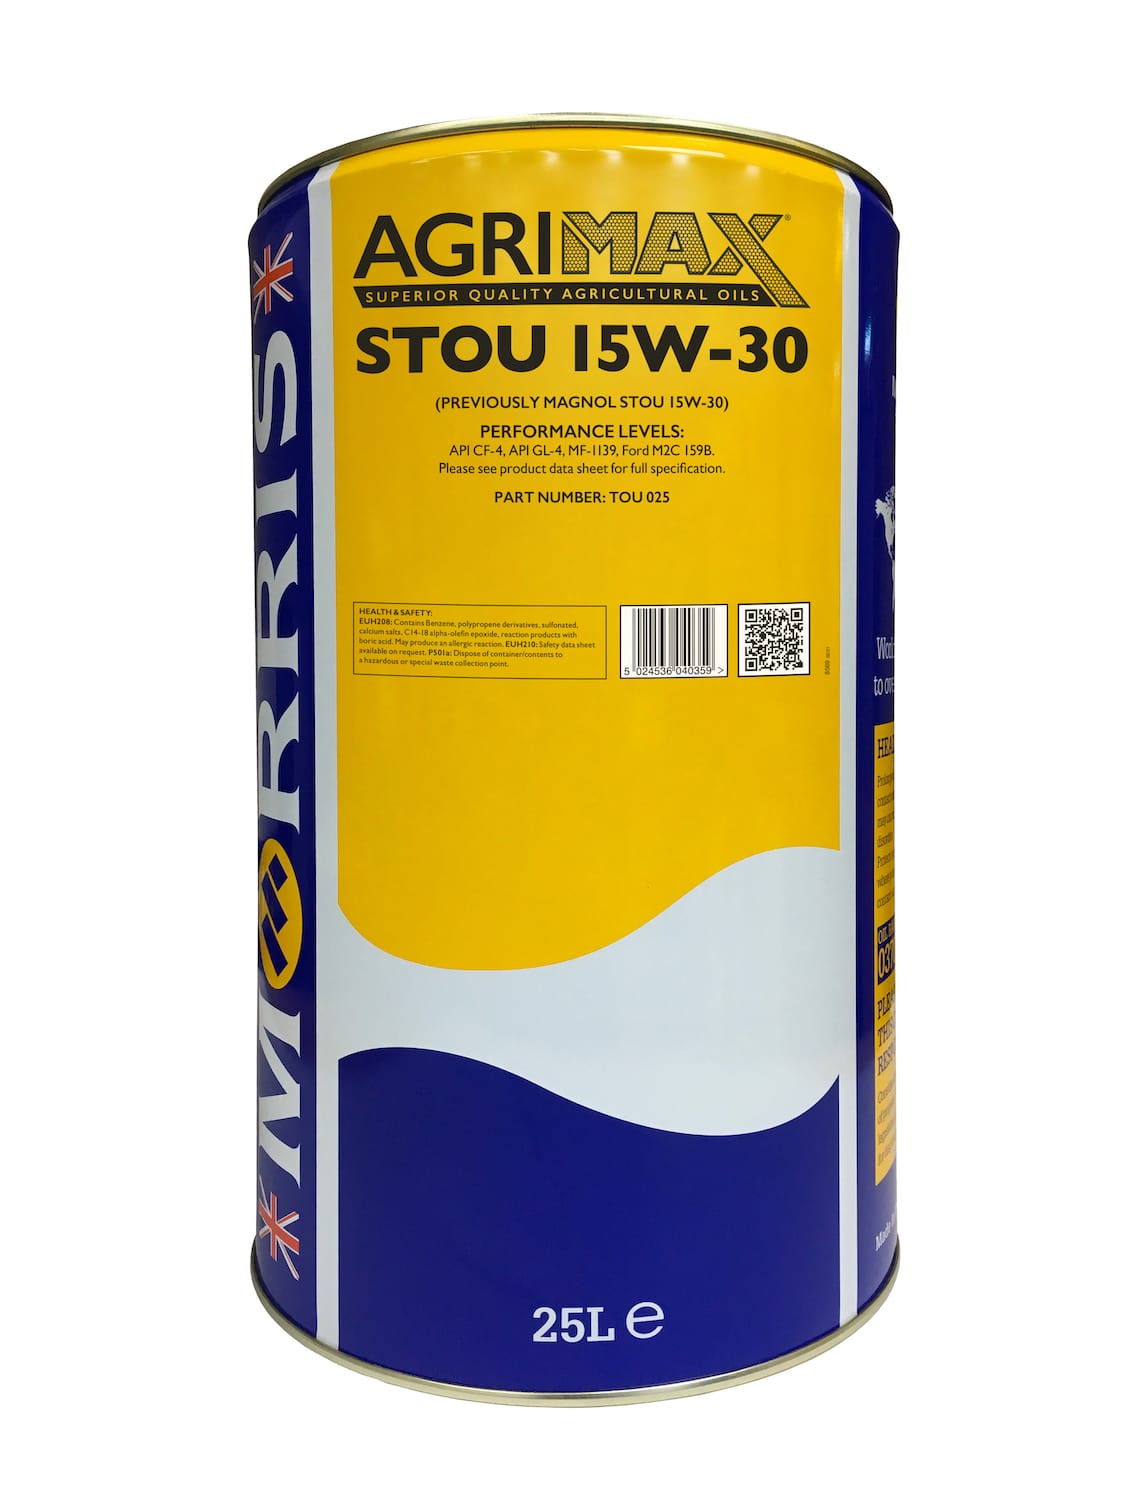 Agrimax STOU 15W-30 (previously called Magnol STOU 15W-30)